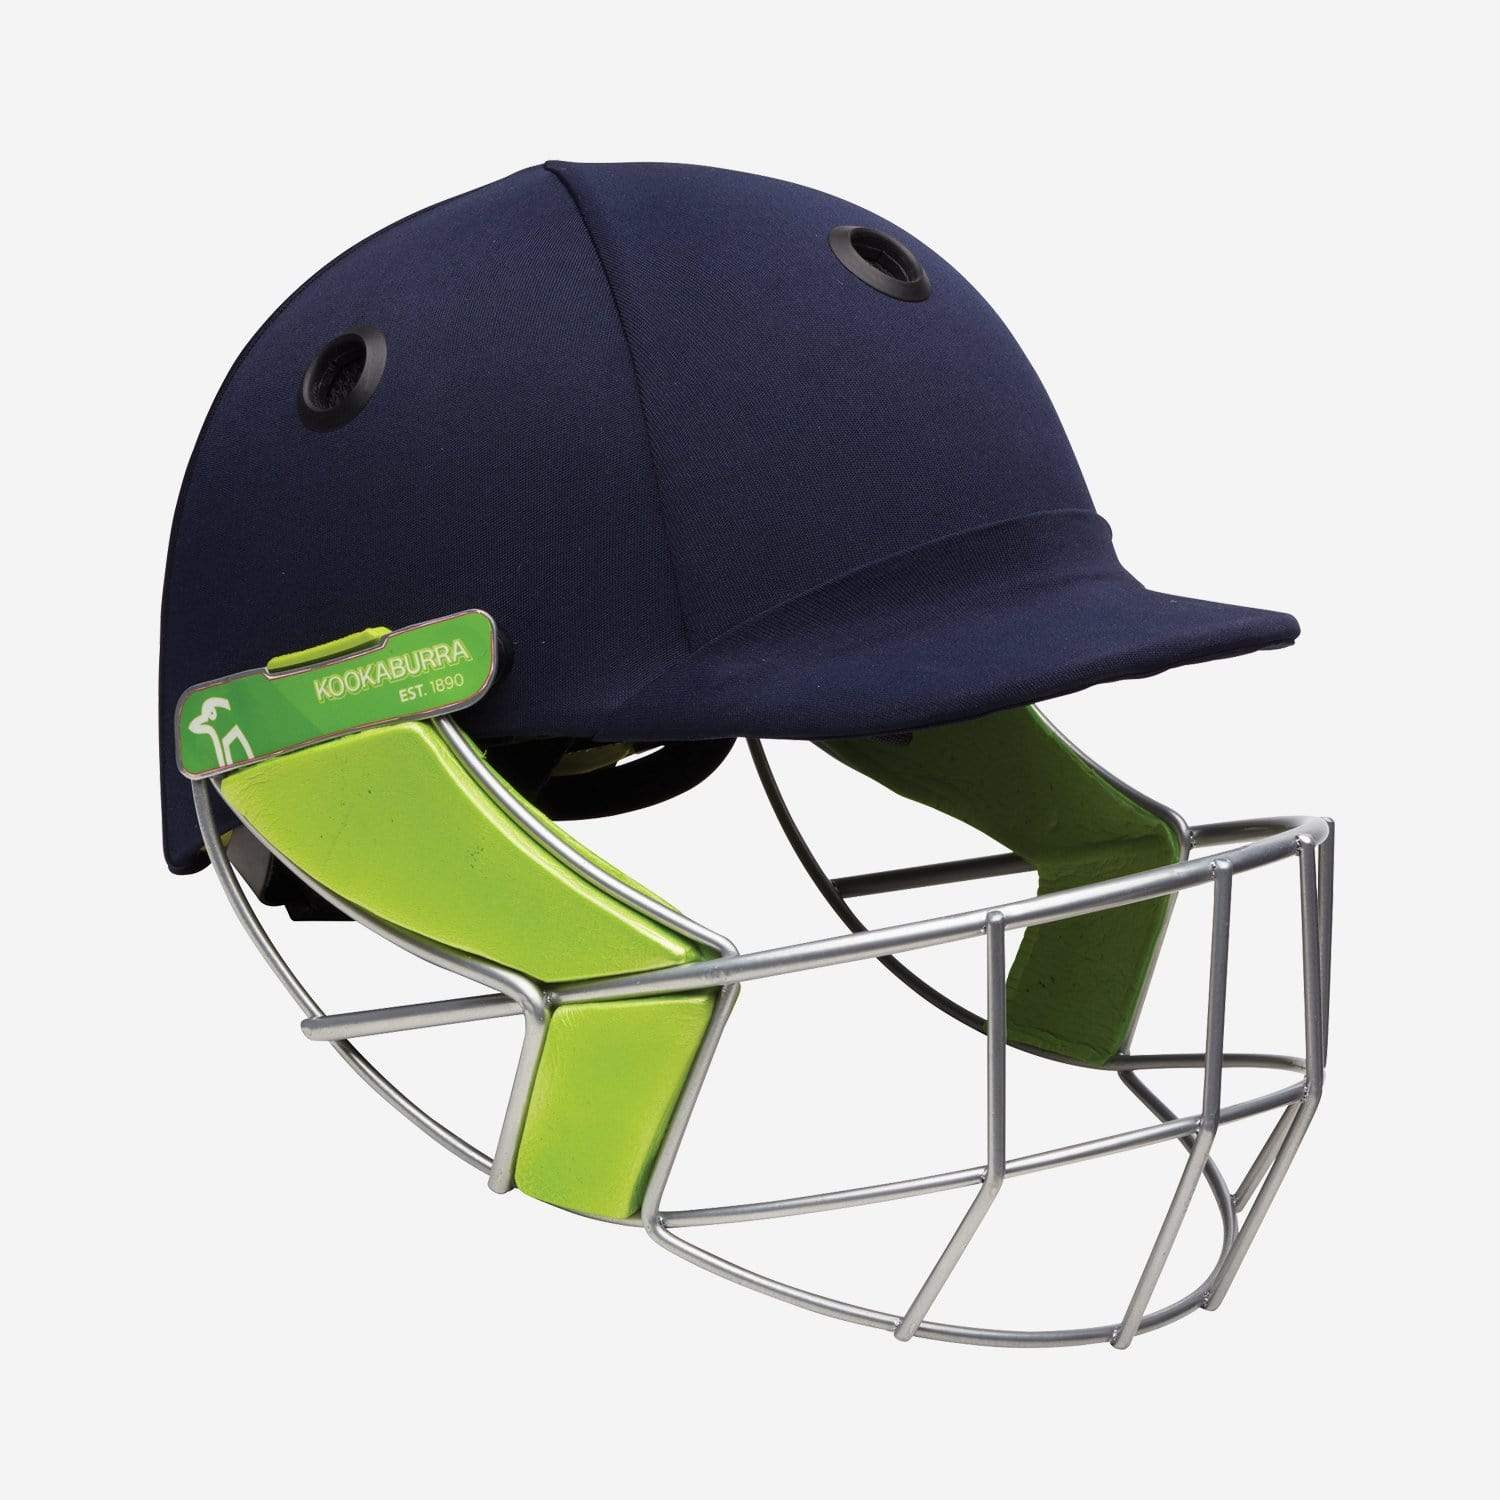 Kookaburra Helmet Kookaburra Pro 1200 Cricket Helmet